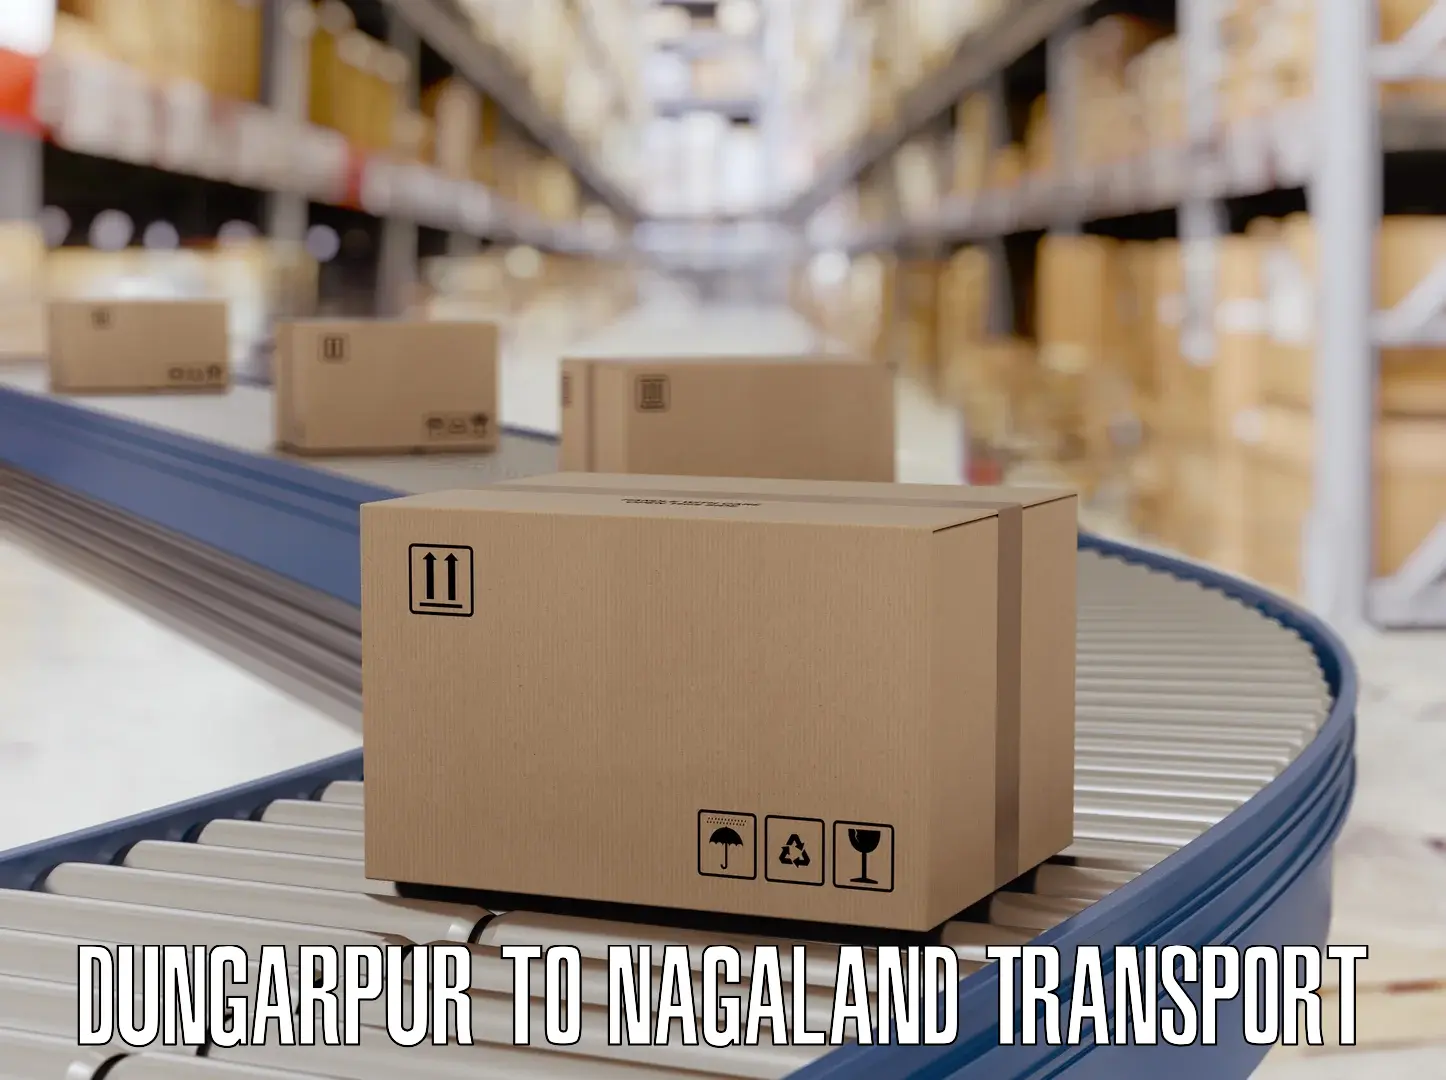 Furniture transport service Dungarpur to NIT Nagaland